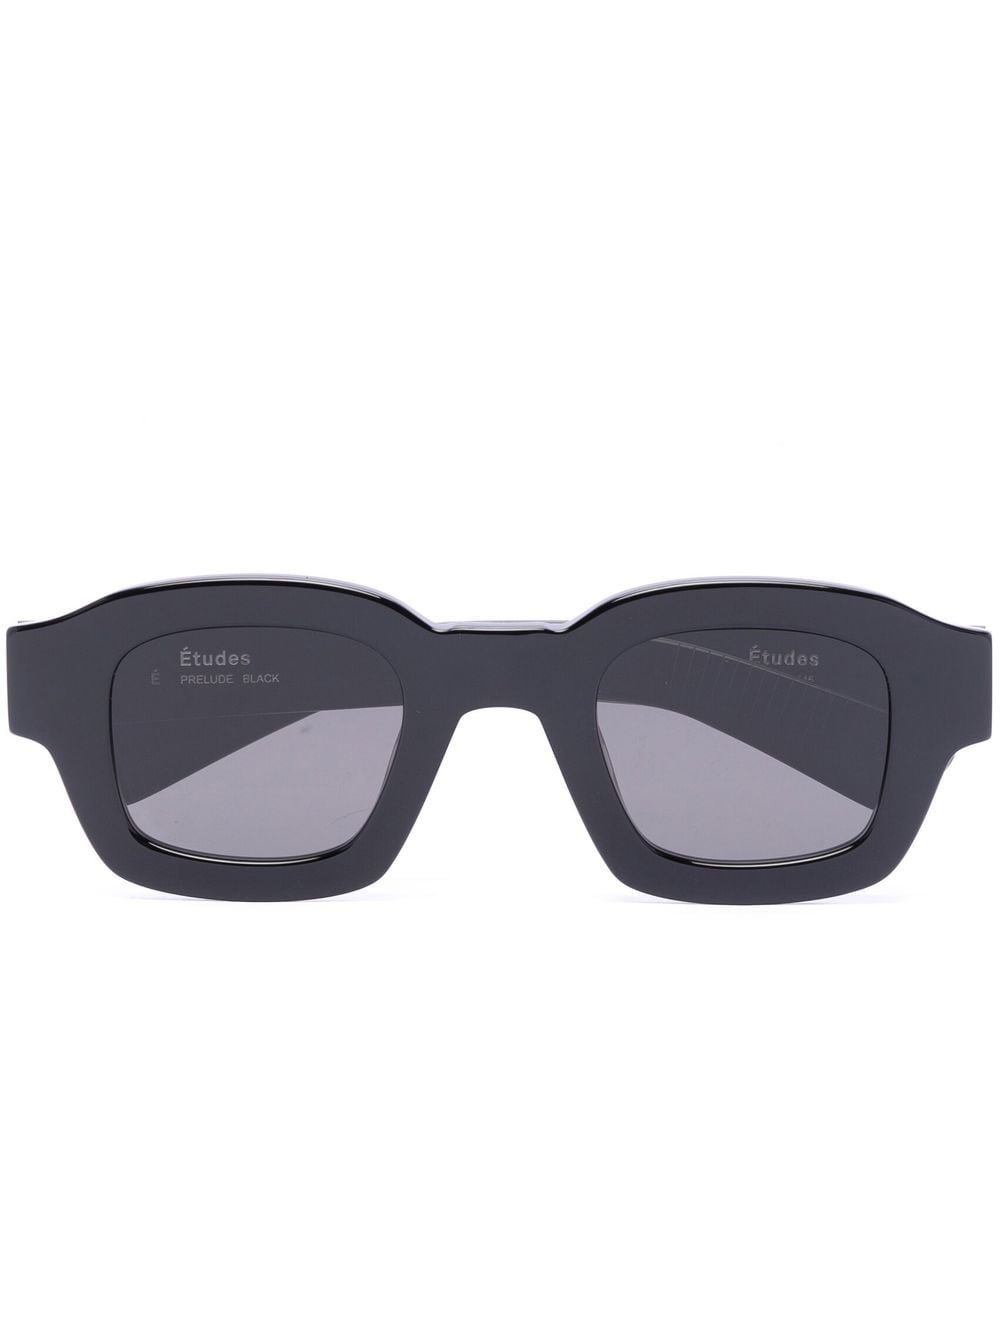 Etudes Studio Square-frame Sunglasses